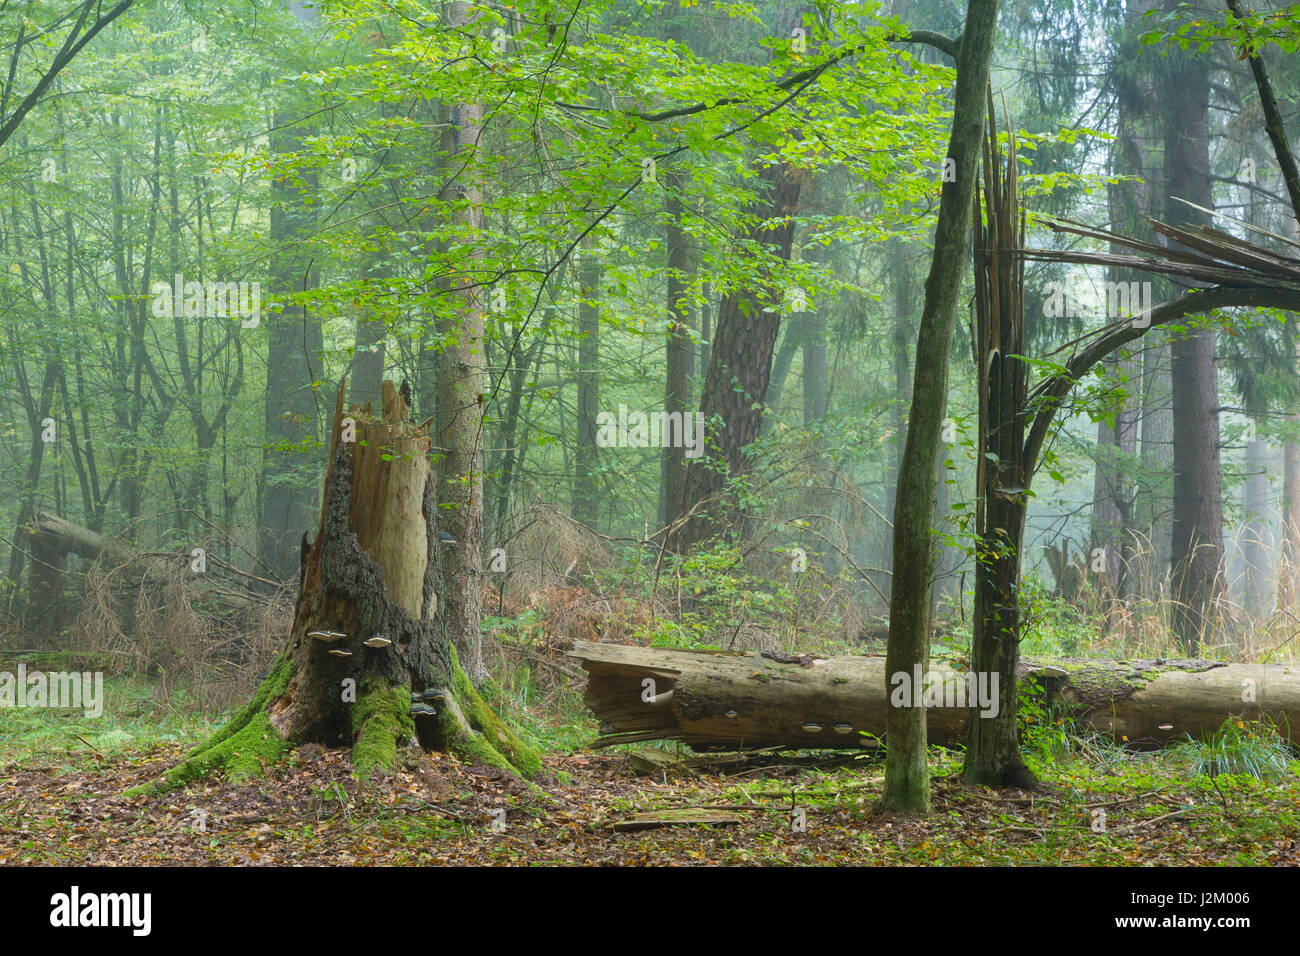 Autunnale stand di latifoglie con albero morto il moncone in parte diminuiti in primo piano con alcuni funghi polypore, foresta di Bialowieza,Polonia,l'Europa Foto Stock